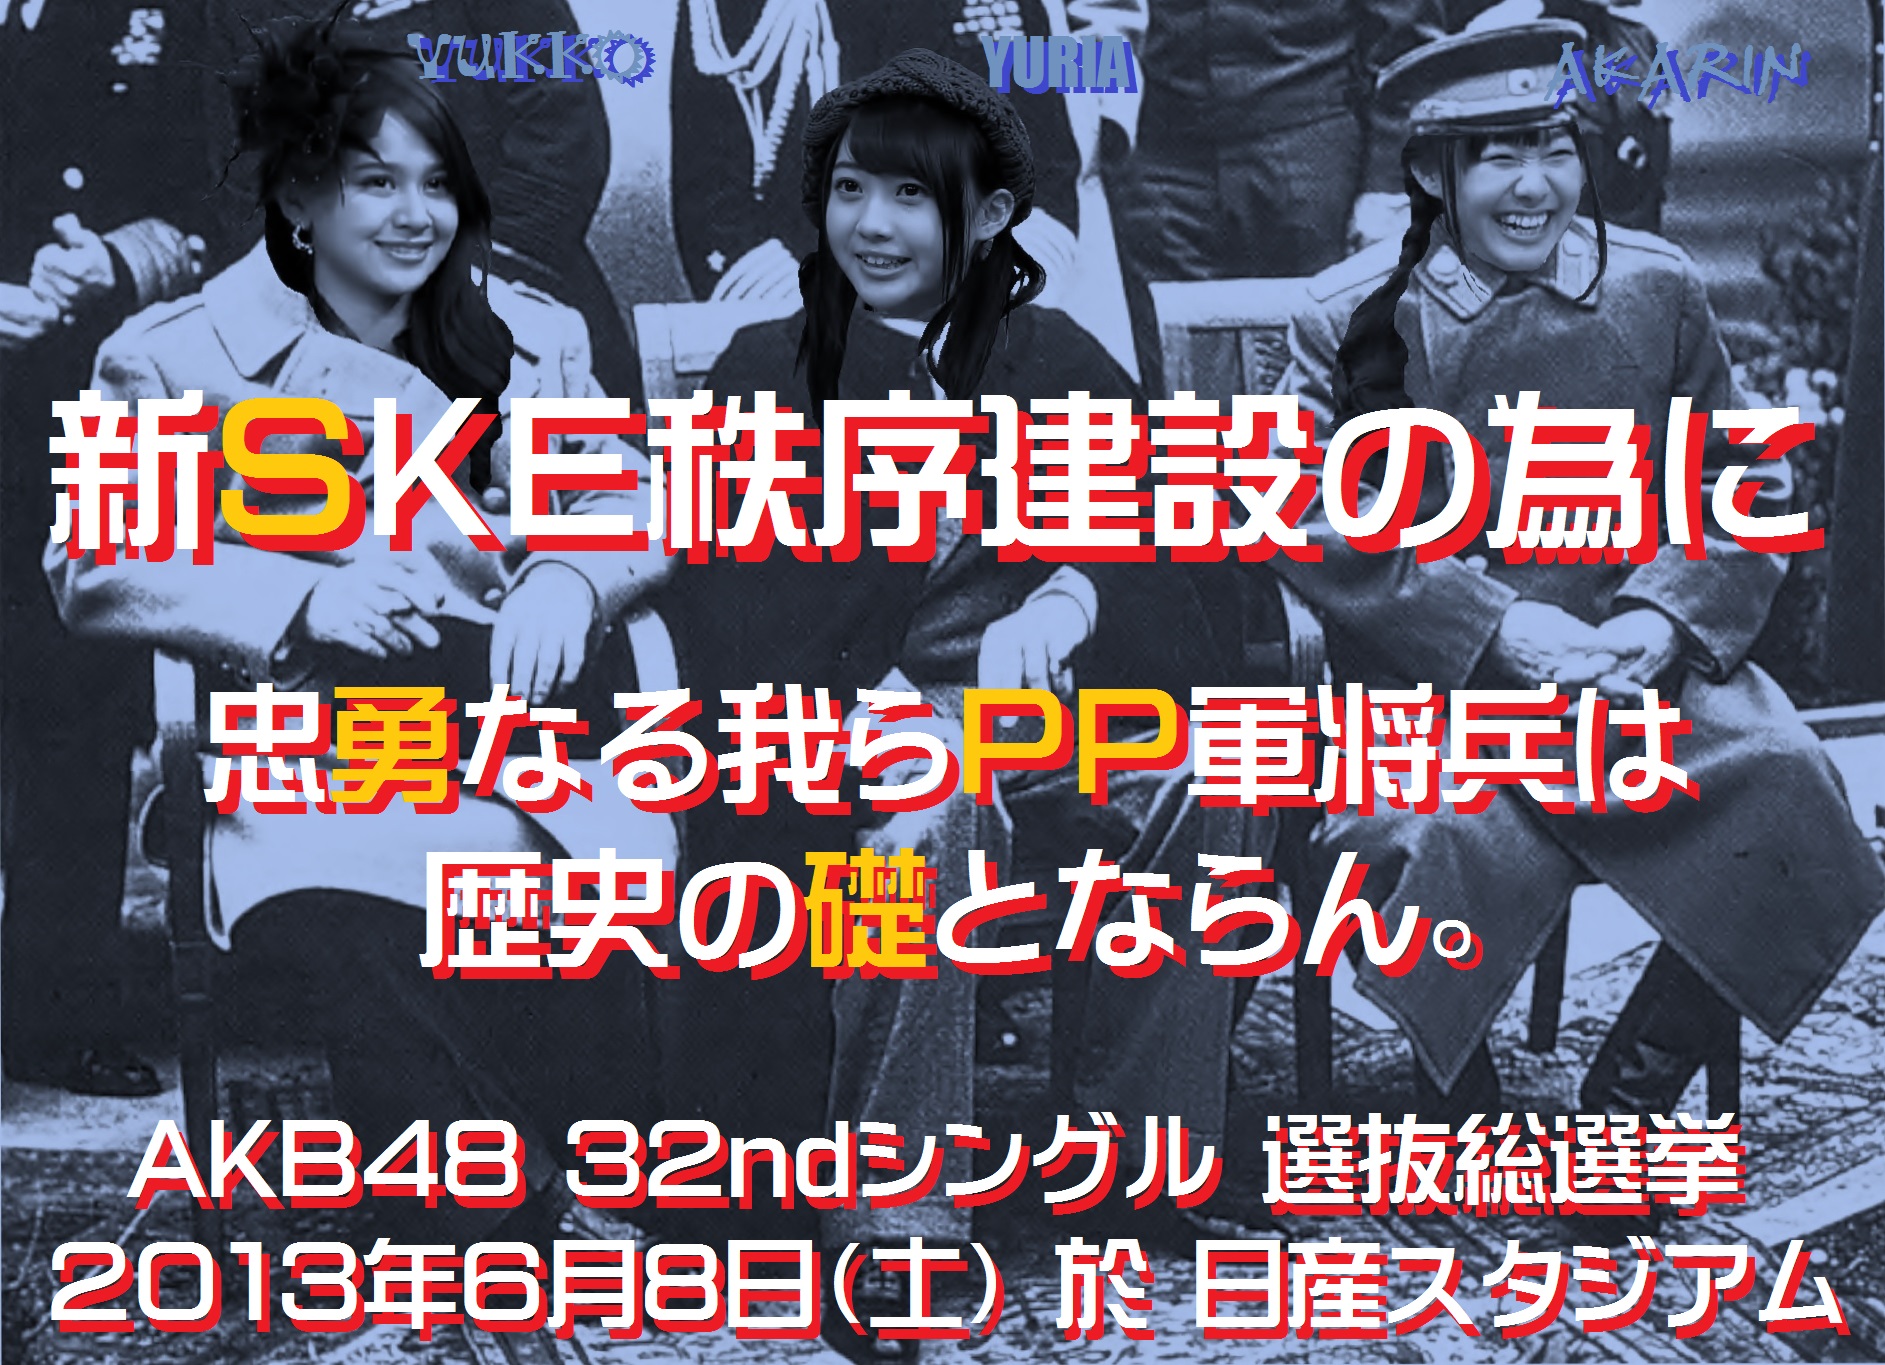 kinoshita kizaki suda 3rd SKE48